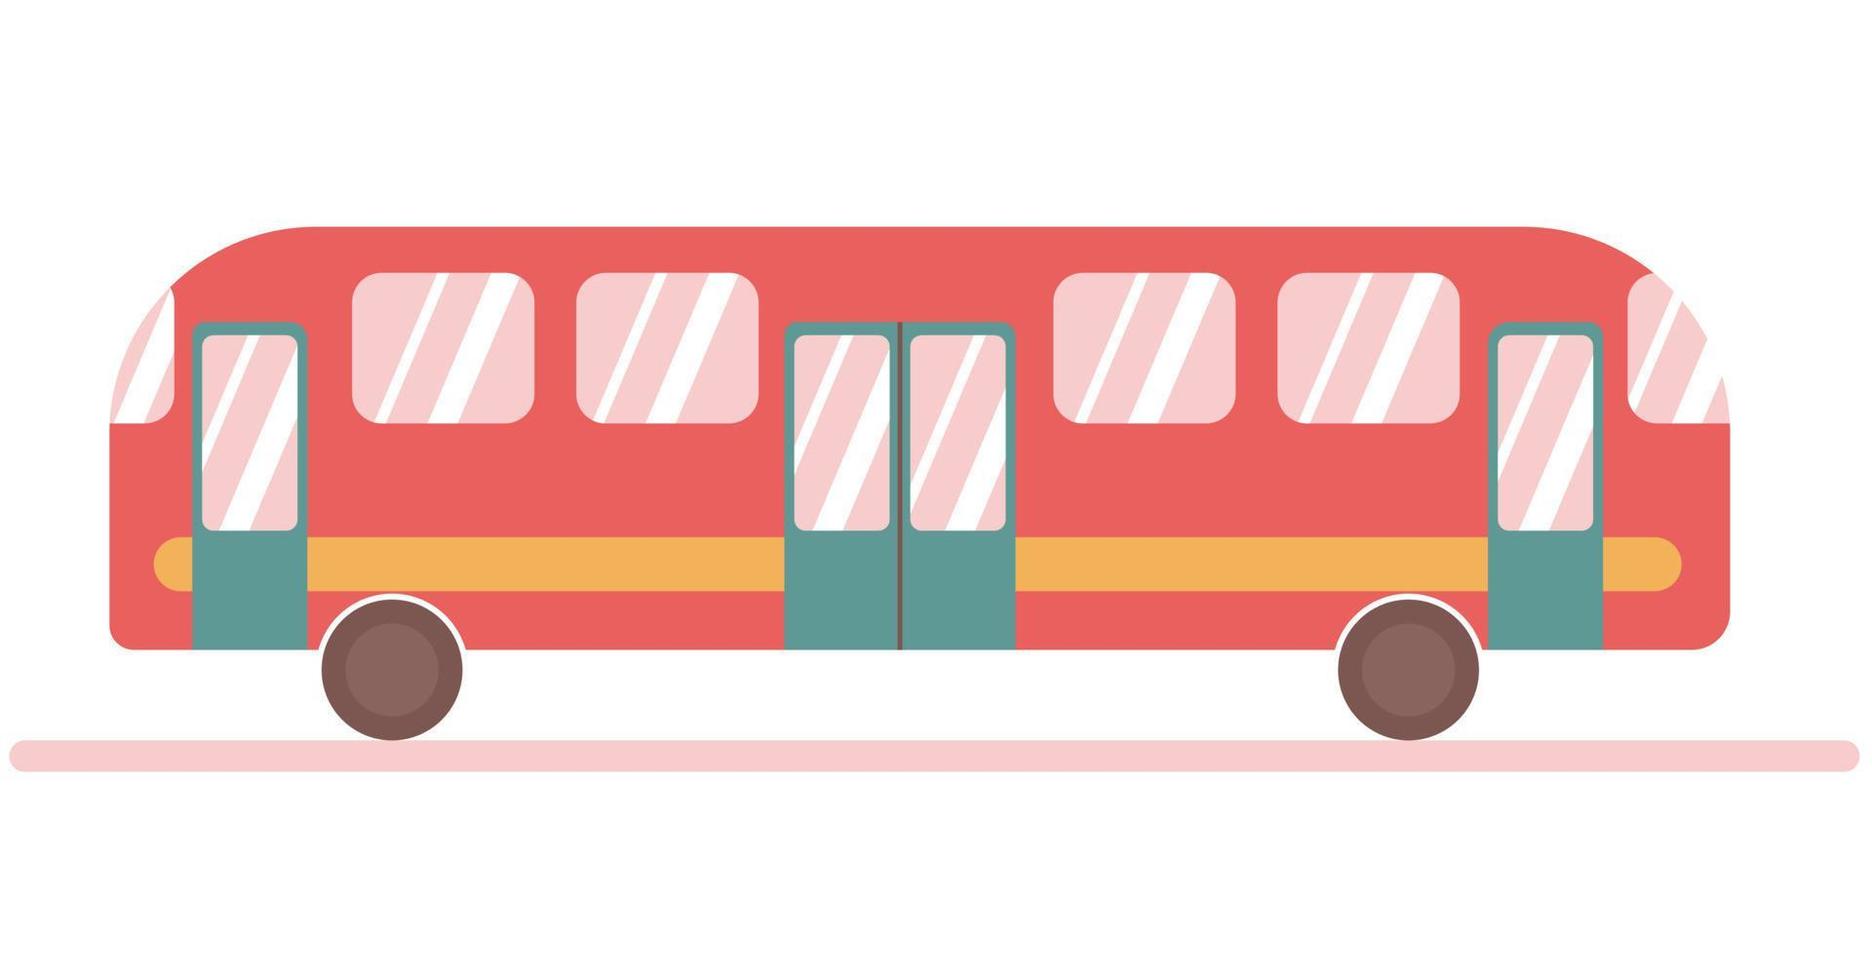 färgrik modern passagerare buss körning på väg vektor illustration. offentlig transport isolerat på vit.